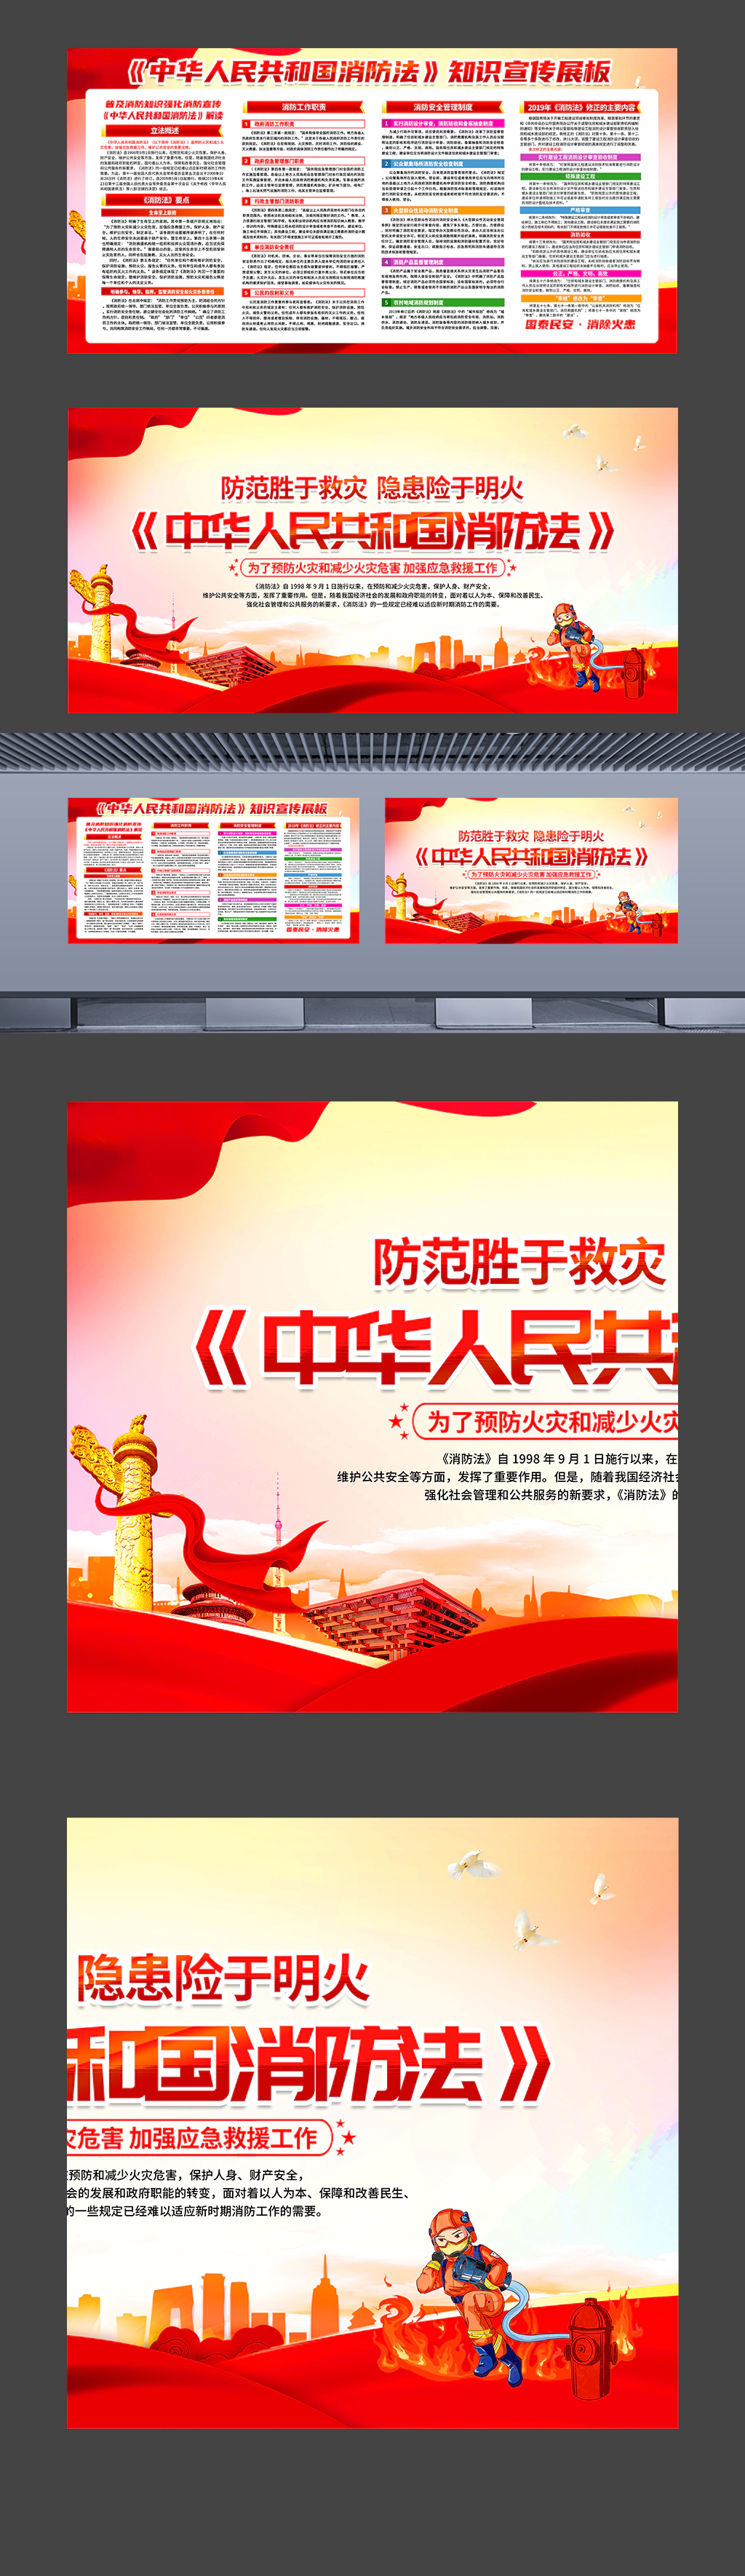 中华人民共和国消防法普法知识宣传展板